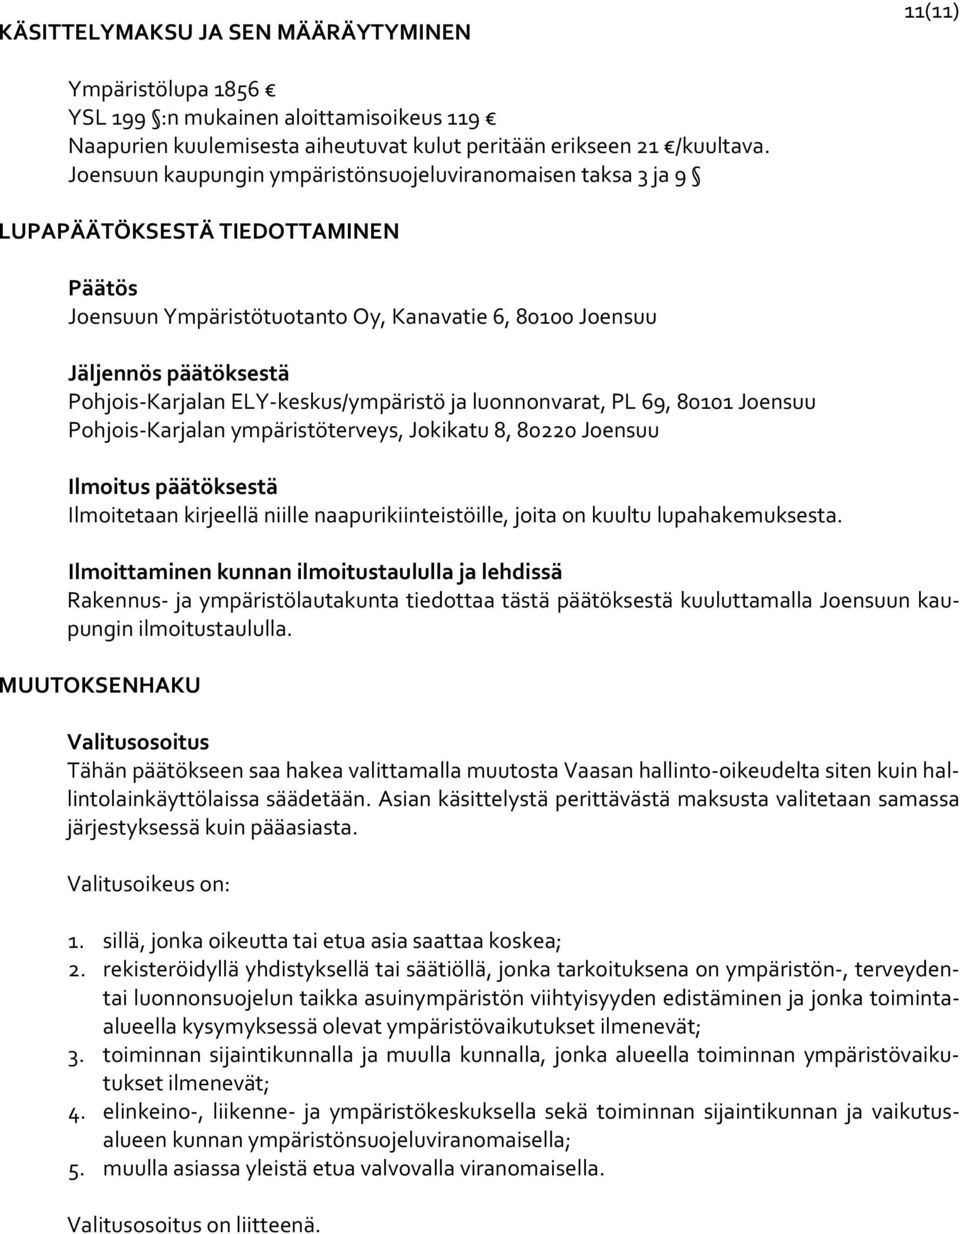 keskus/ympäristö ja luonnonvarat, PL 69, 80101 Joensuu Pohjois Karjalan ympäristöterveys, Jokikatu 8, 80220 Joensuu Ilmoitus päätöksestä Ilmoitetaan kirjeellä niille naapurikiinteistöille, joita on